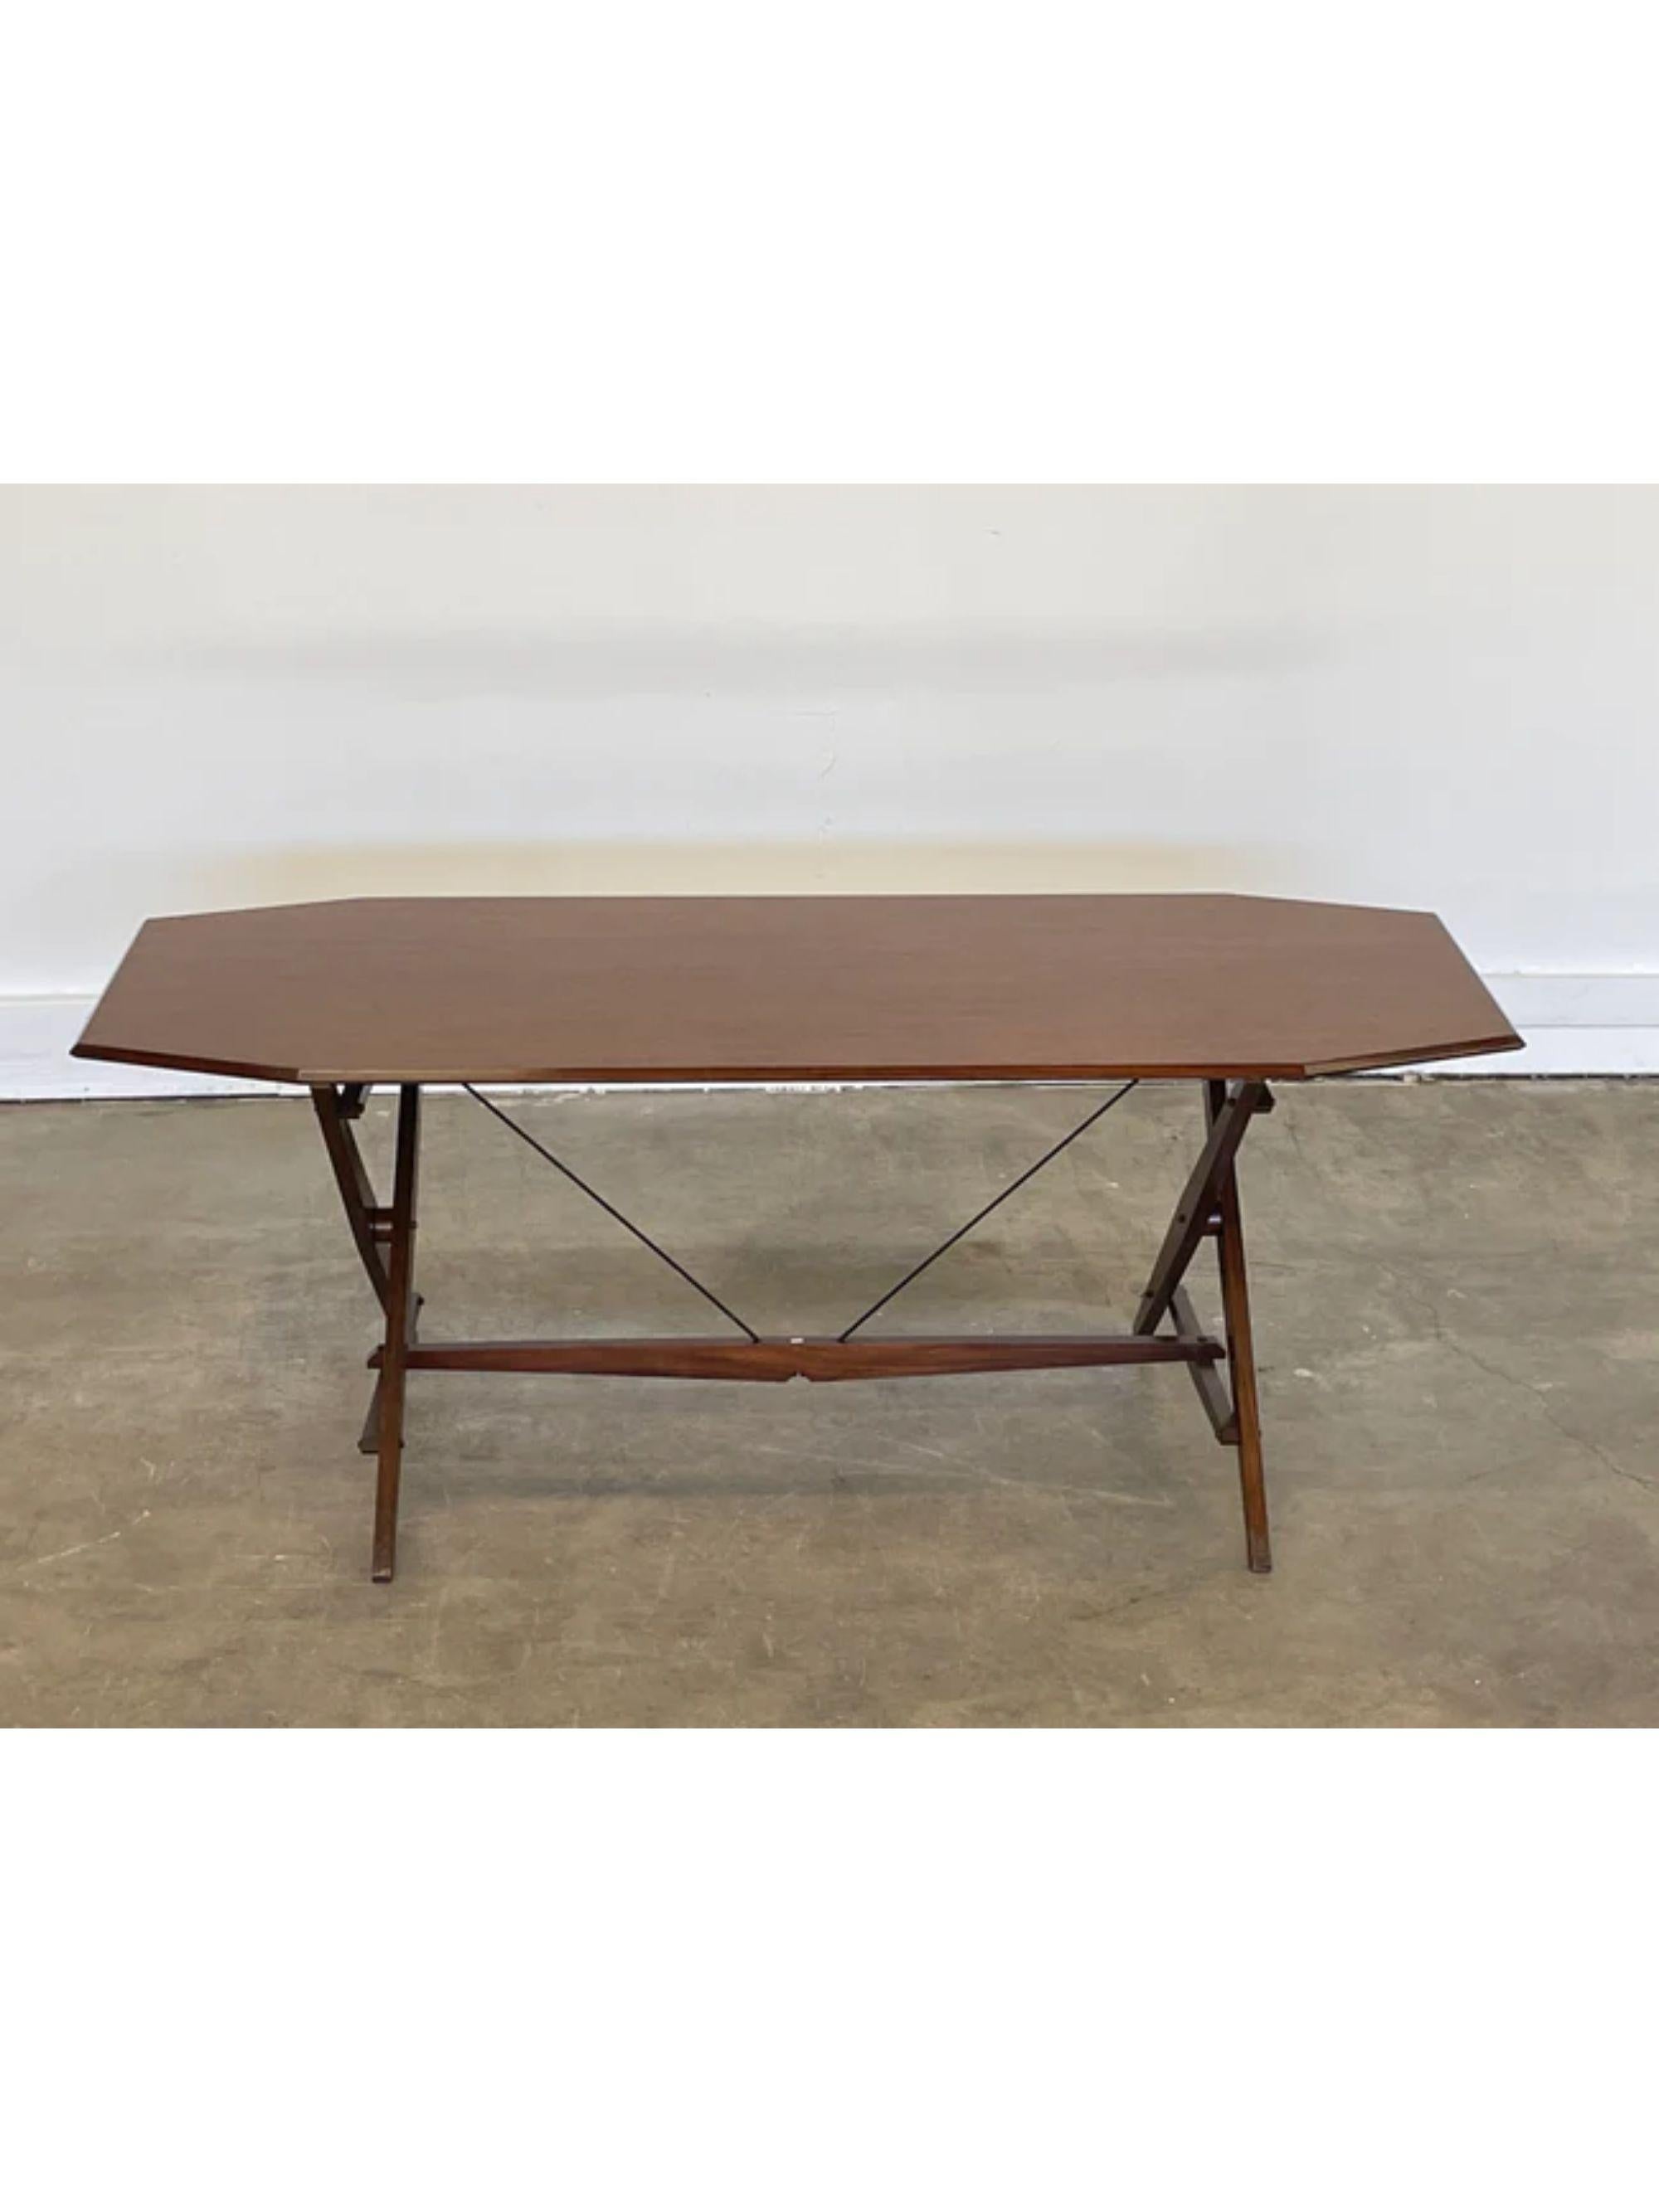 Italian Model Tl2 Desk / Dining Table by Franco Albini for Poggi, Italy, 1951 For Sale